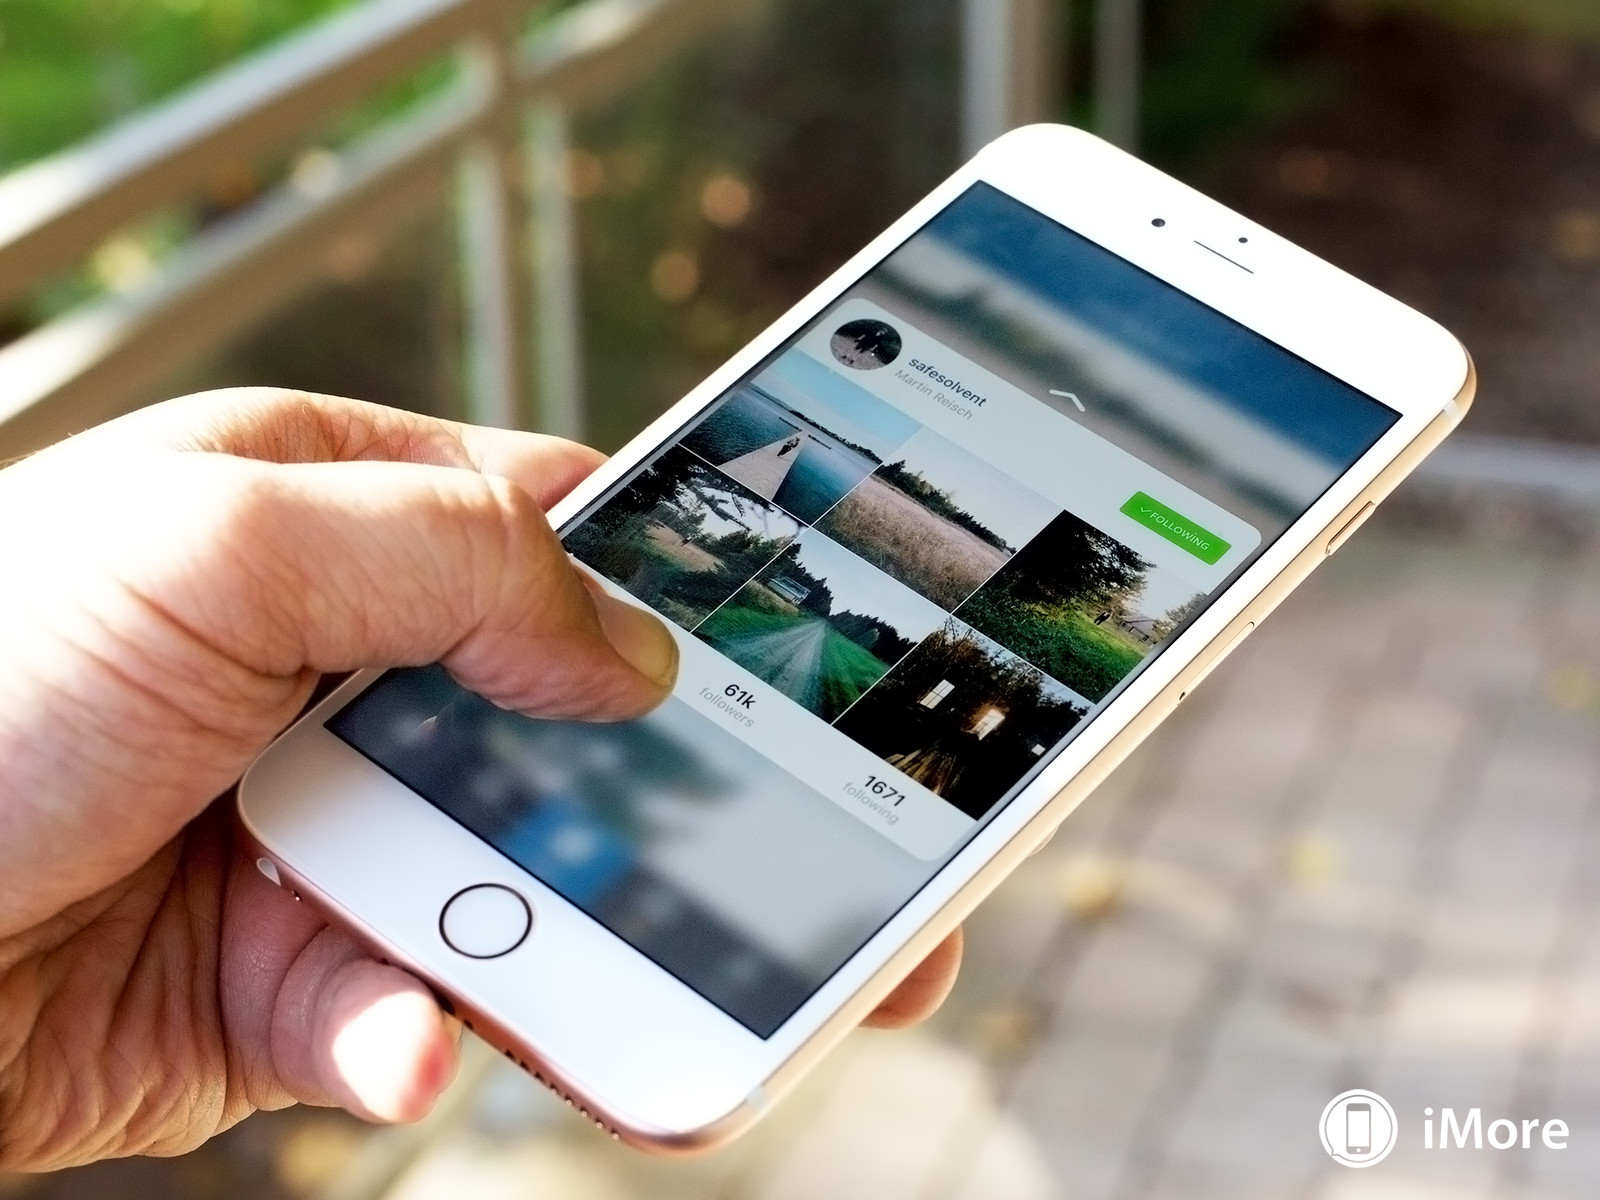 รู้หรือไม่ว่า iPhone รุ่นเก่าก็ใช้ 3D Touch ใน Instagram ได้!